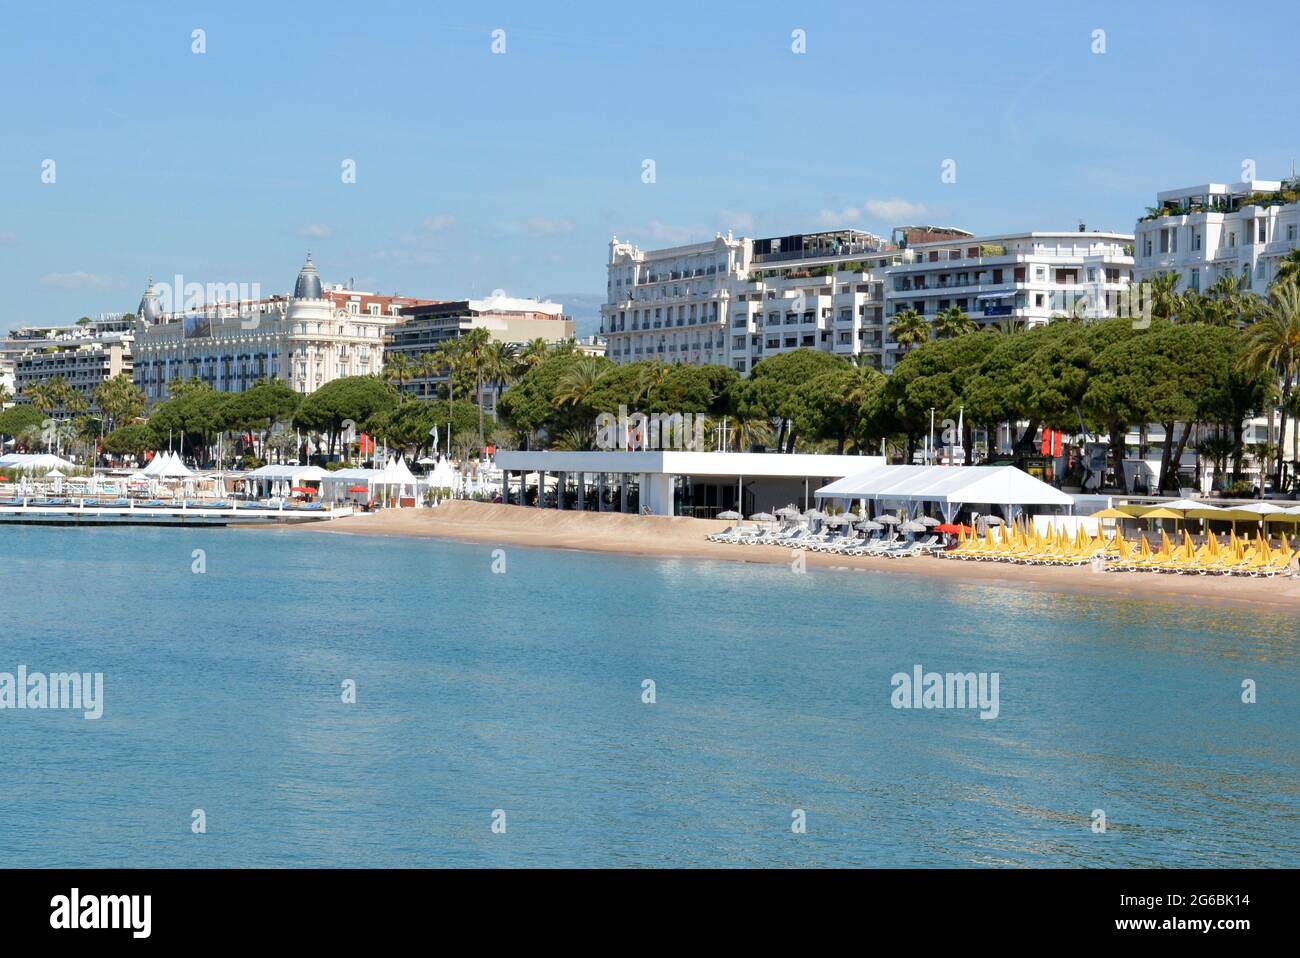 Francia, Cannes, Boulevard Croisette, hotel di lusso, spiagge di sabbia con ombrelloni multicolore e lettini. Foto Stock